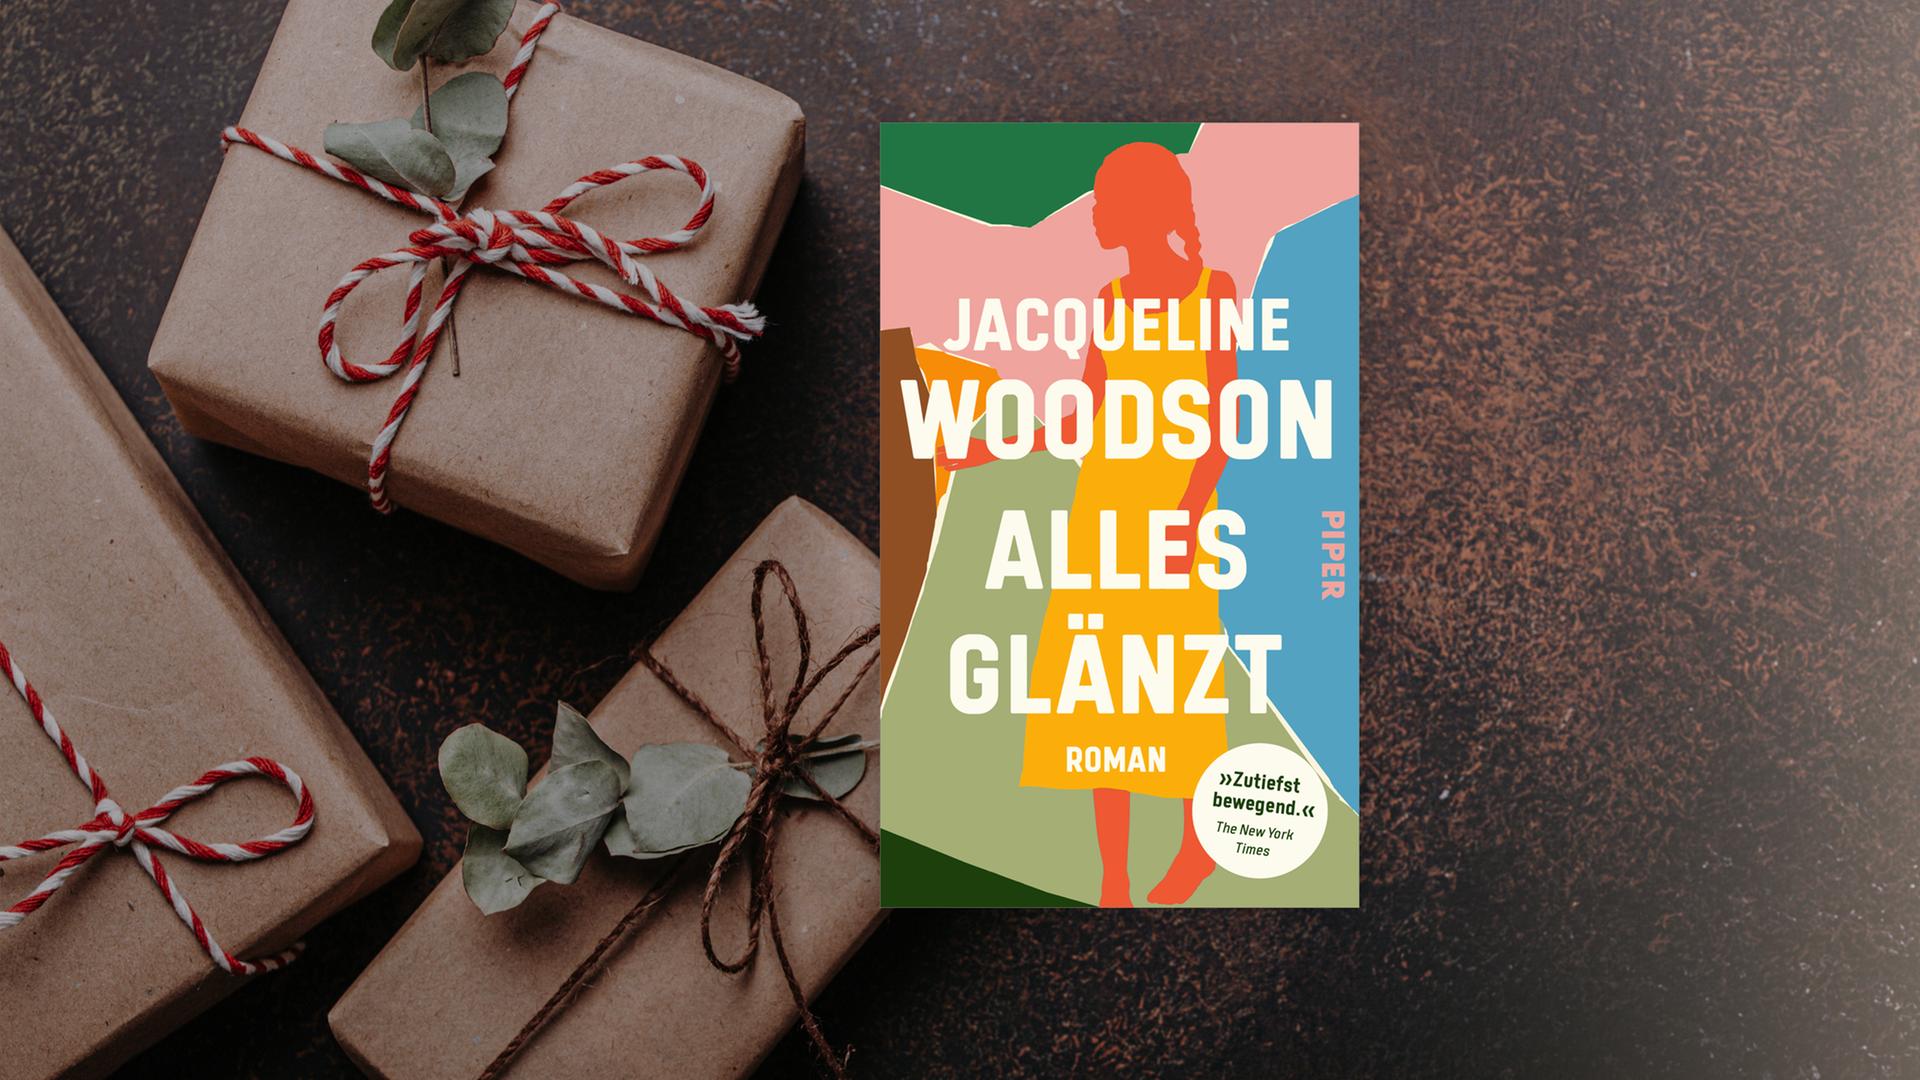 Das Cover des Buches "Alles glänzt" von Jacqueline Woodson auf einem adventlichen Hintergrund.